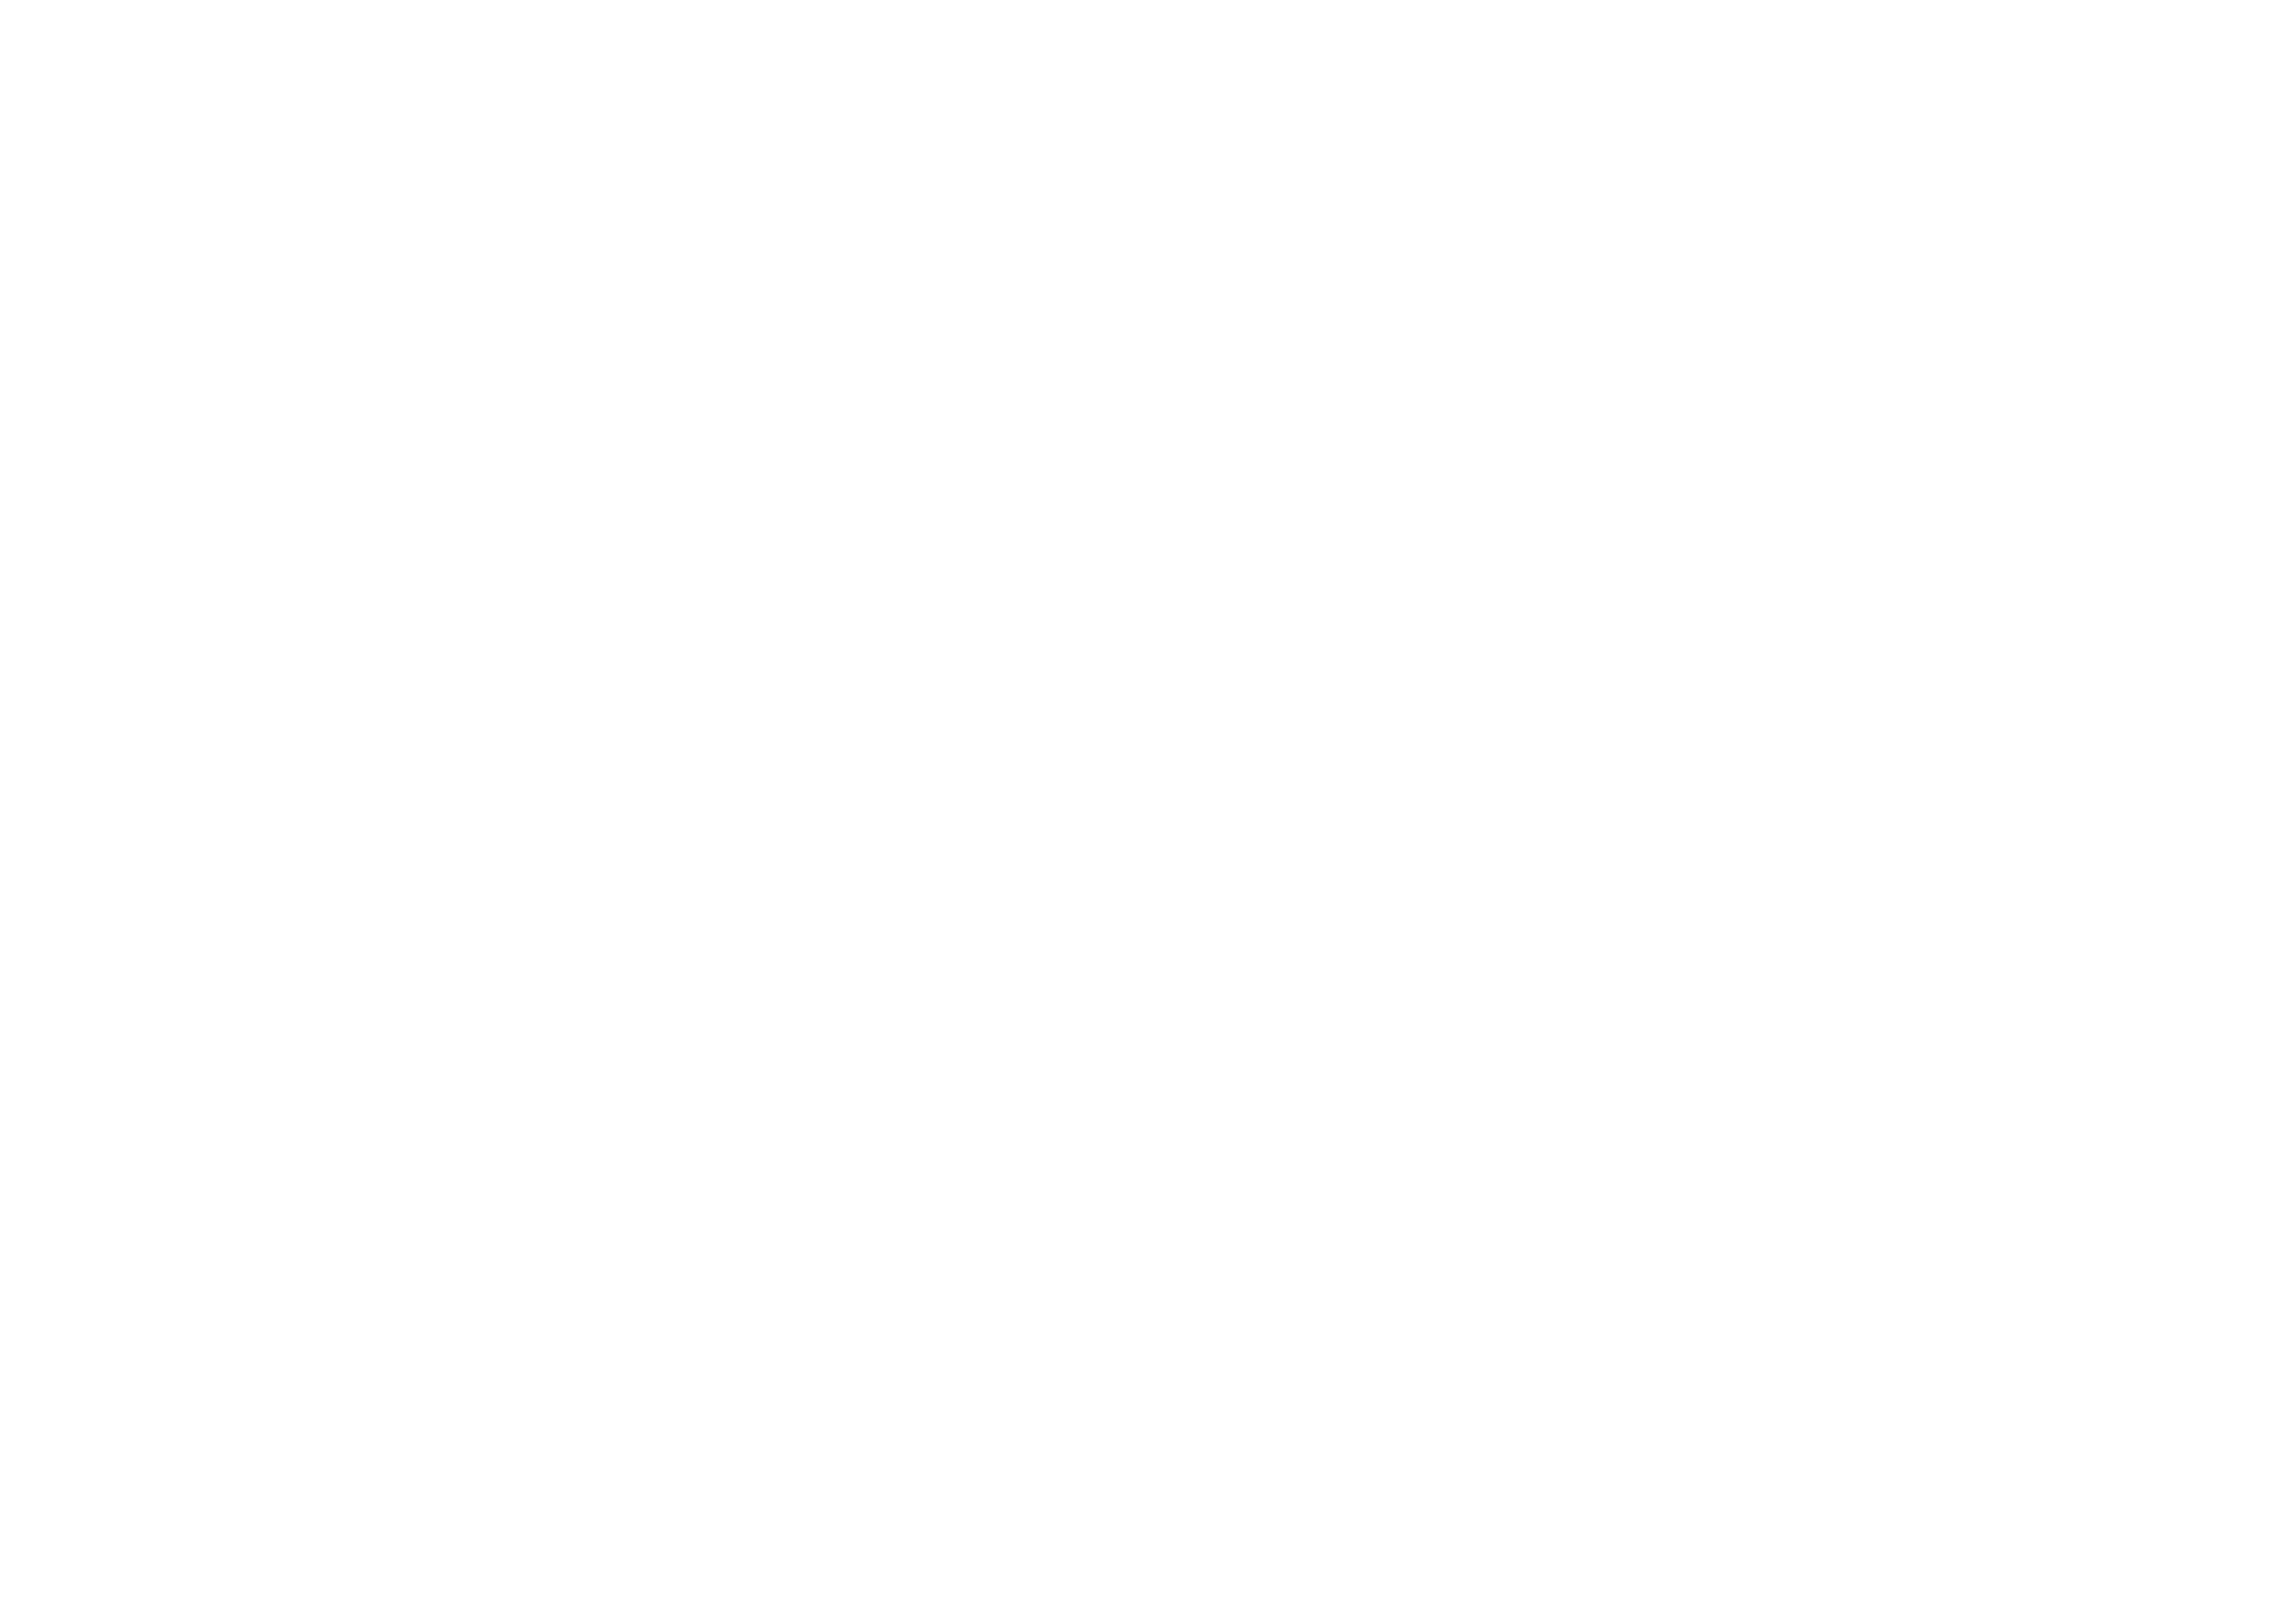 Junkyard Drive 